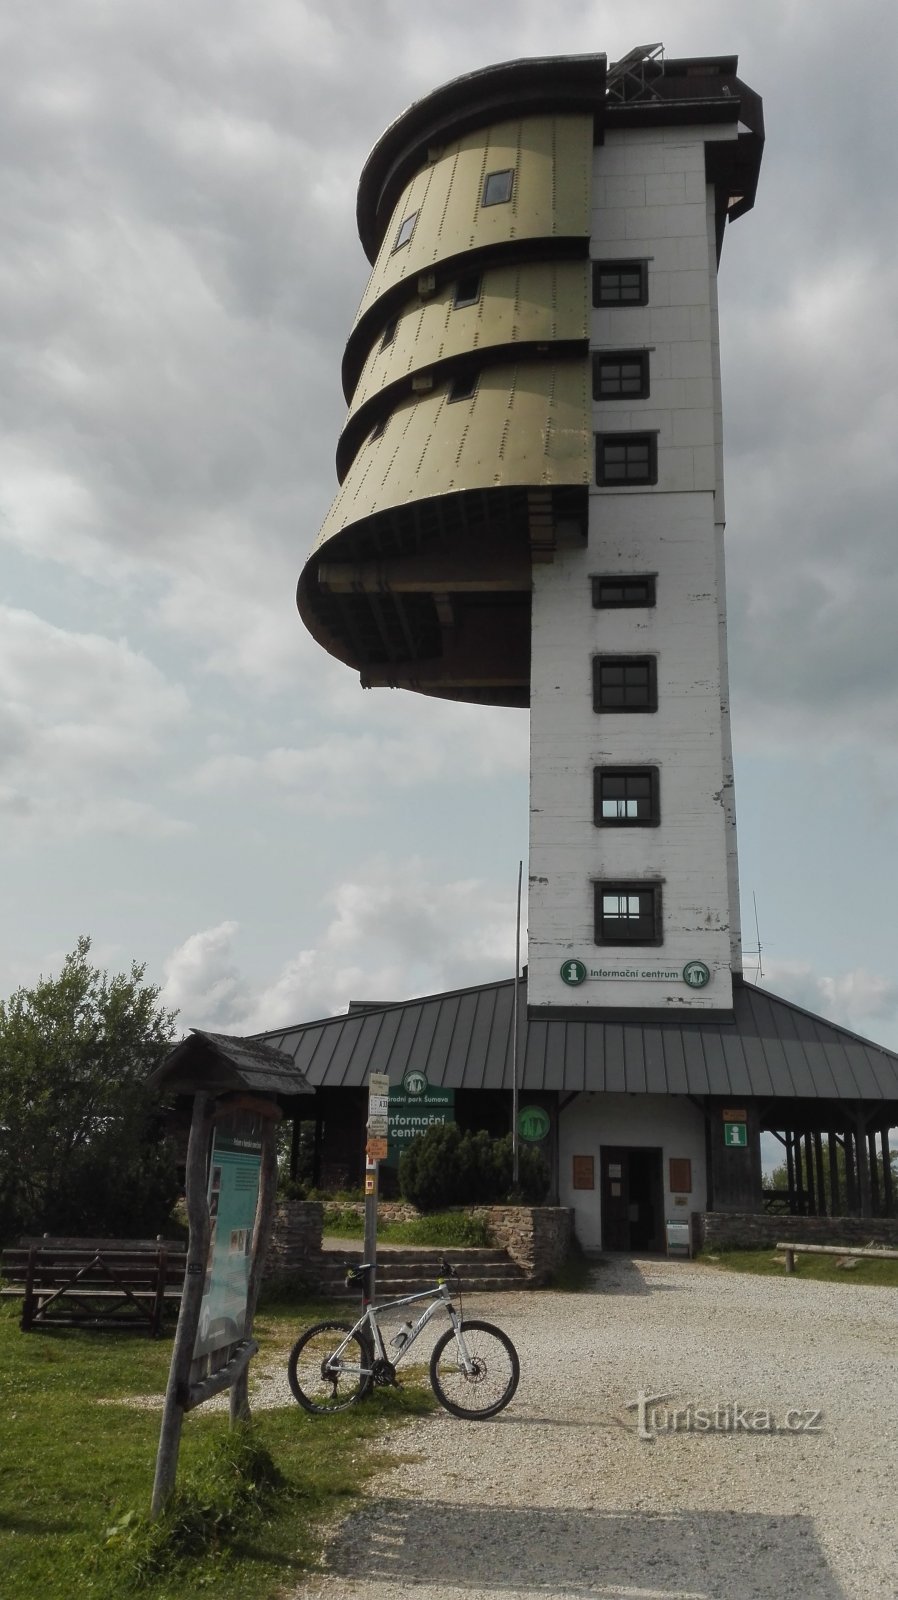 Turnul de observație pe Meridian.